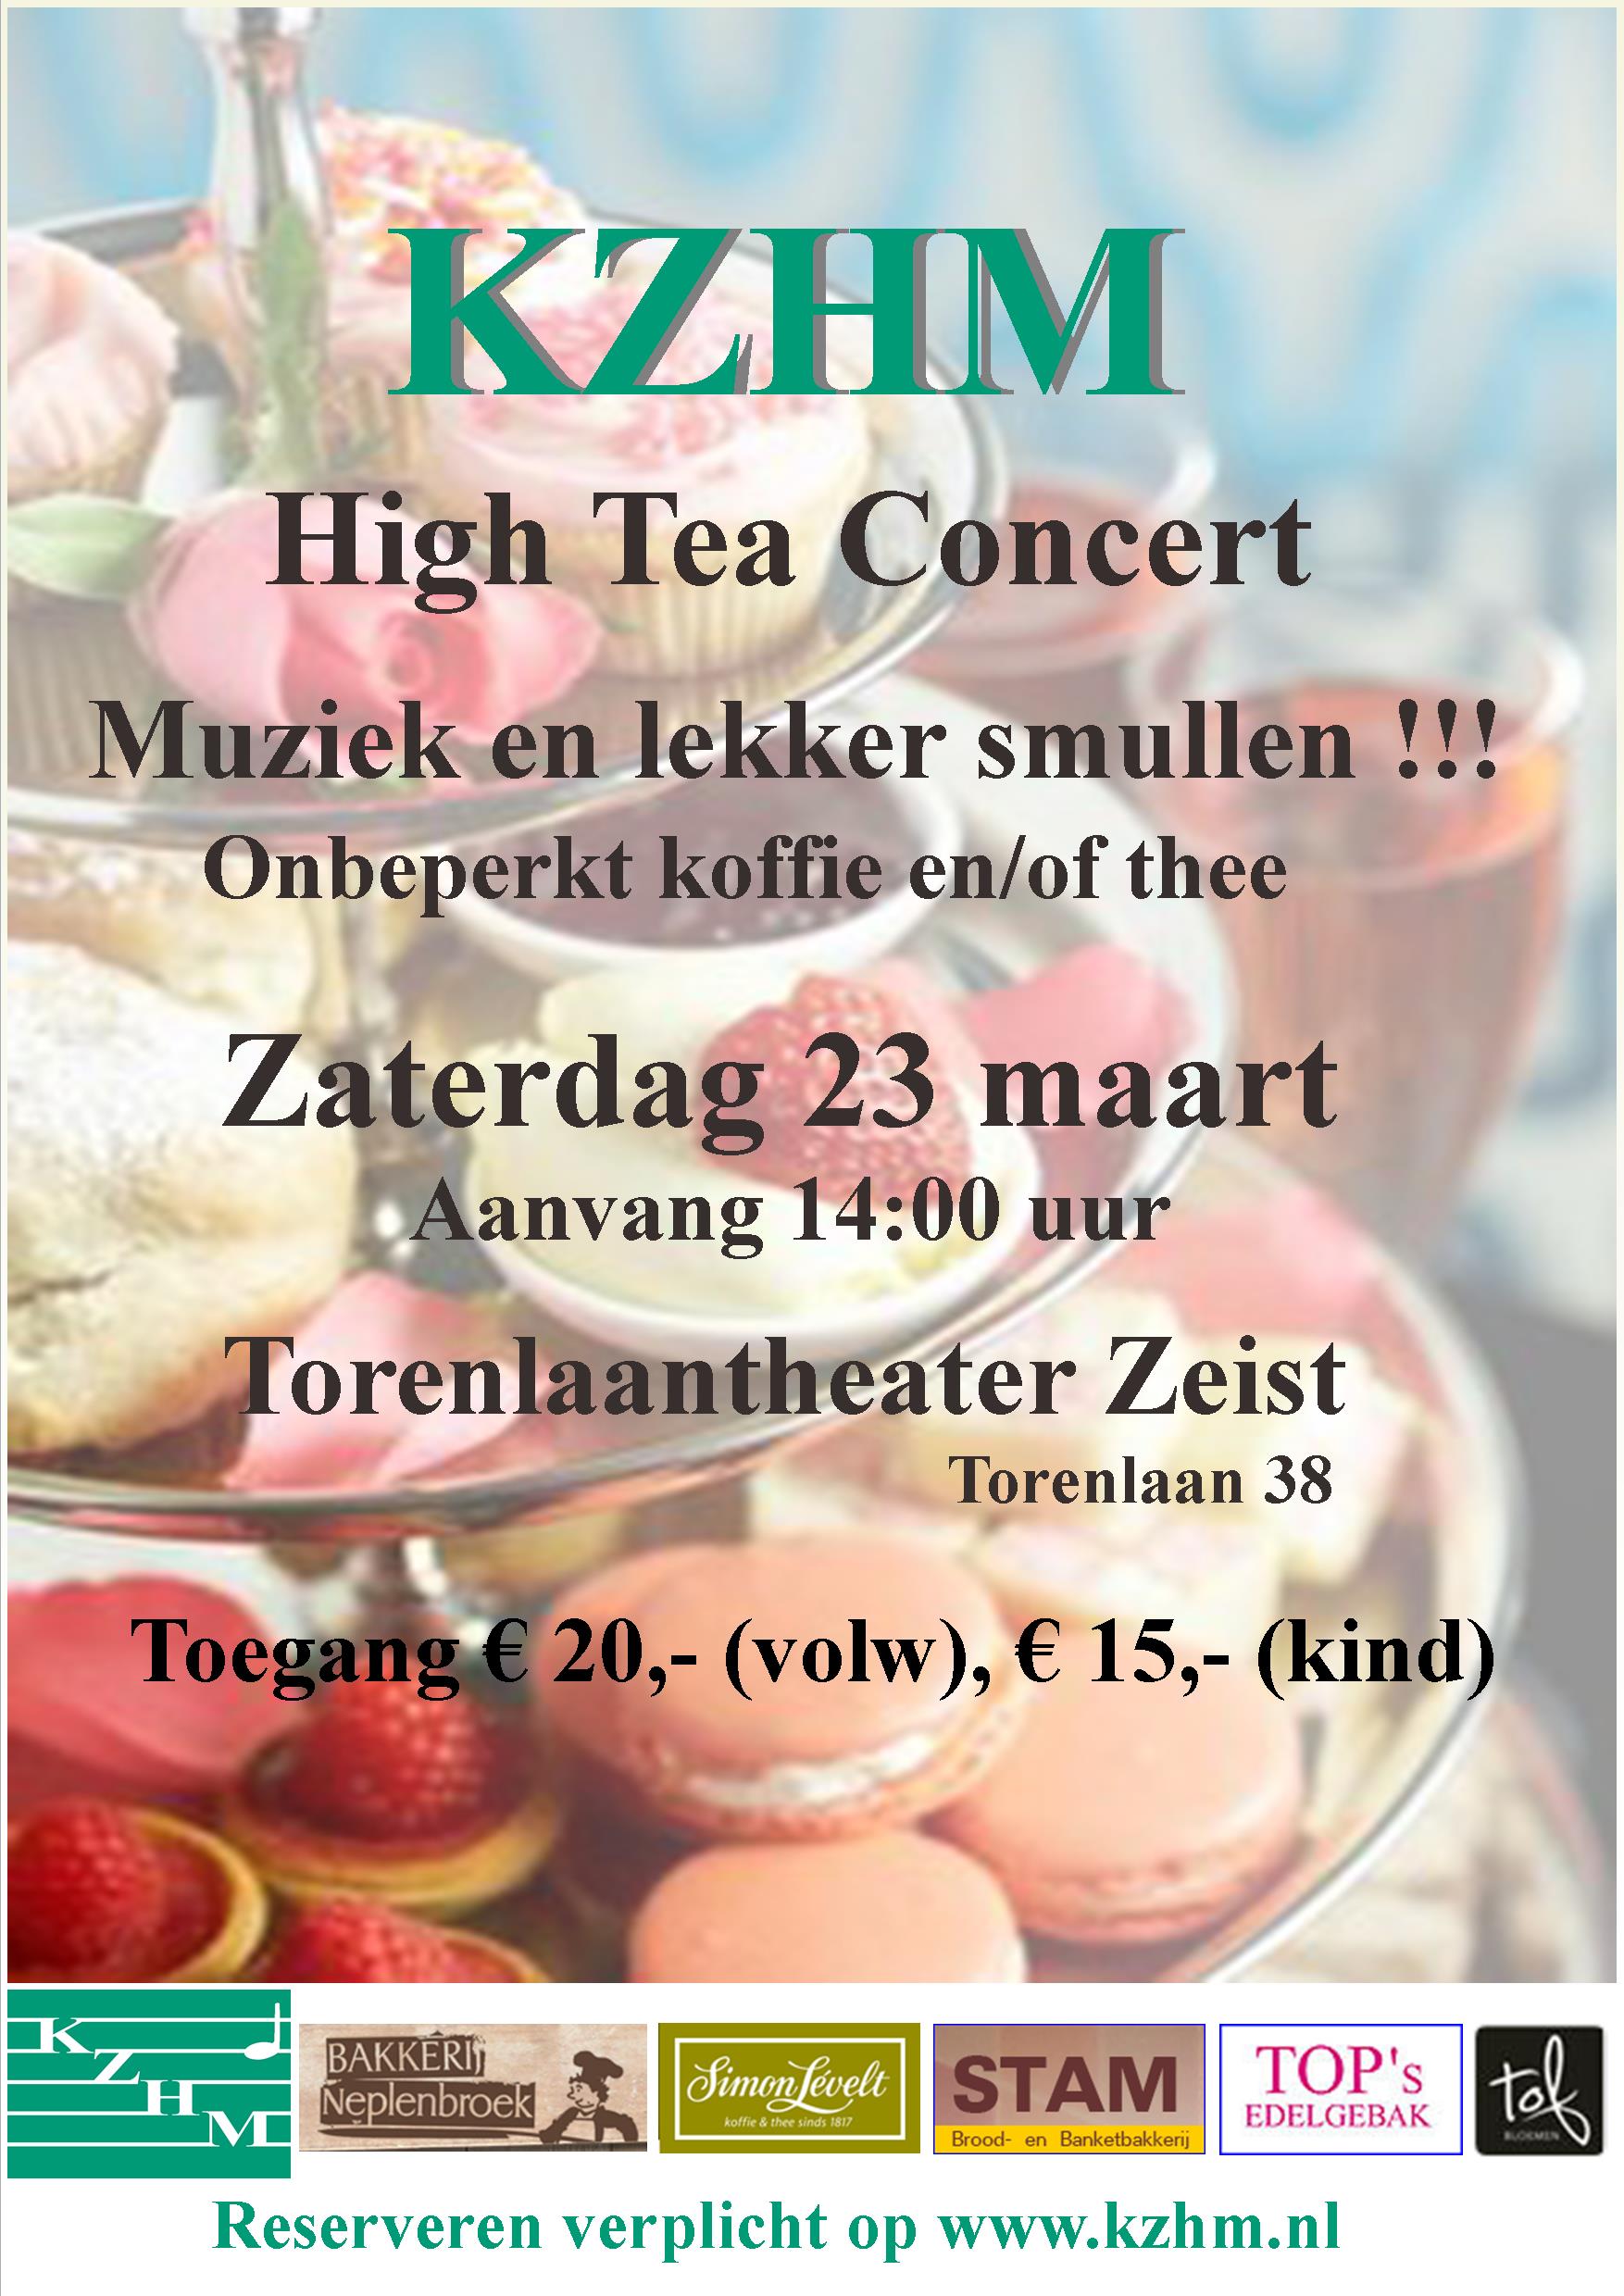 High Tea concert KZHM